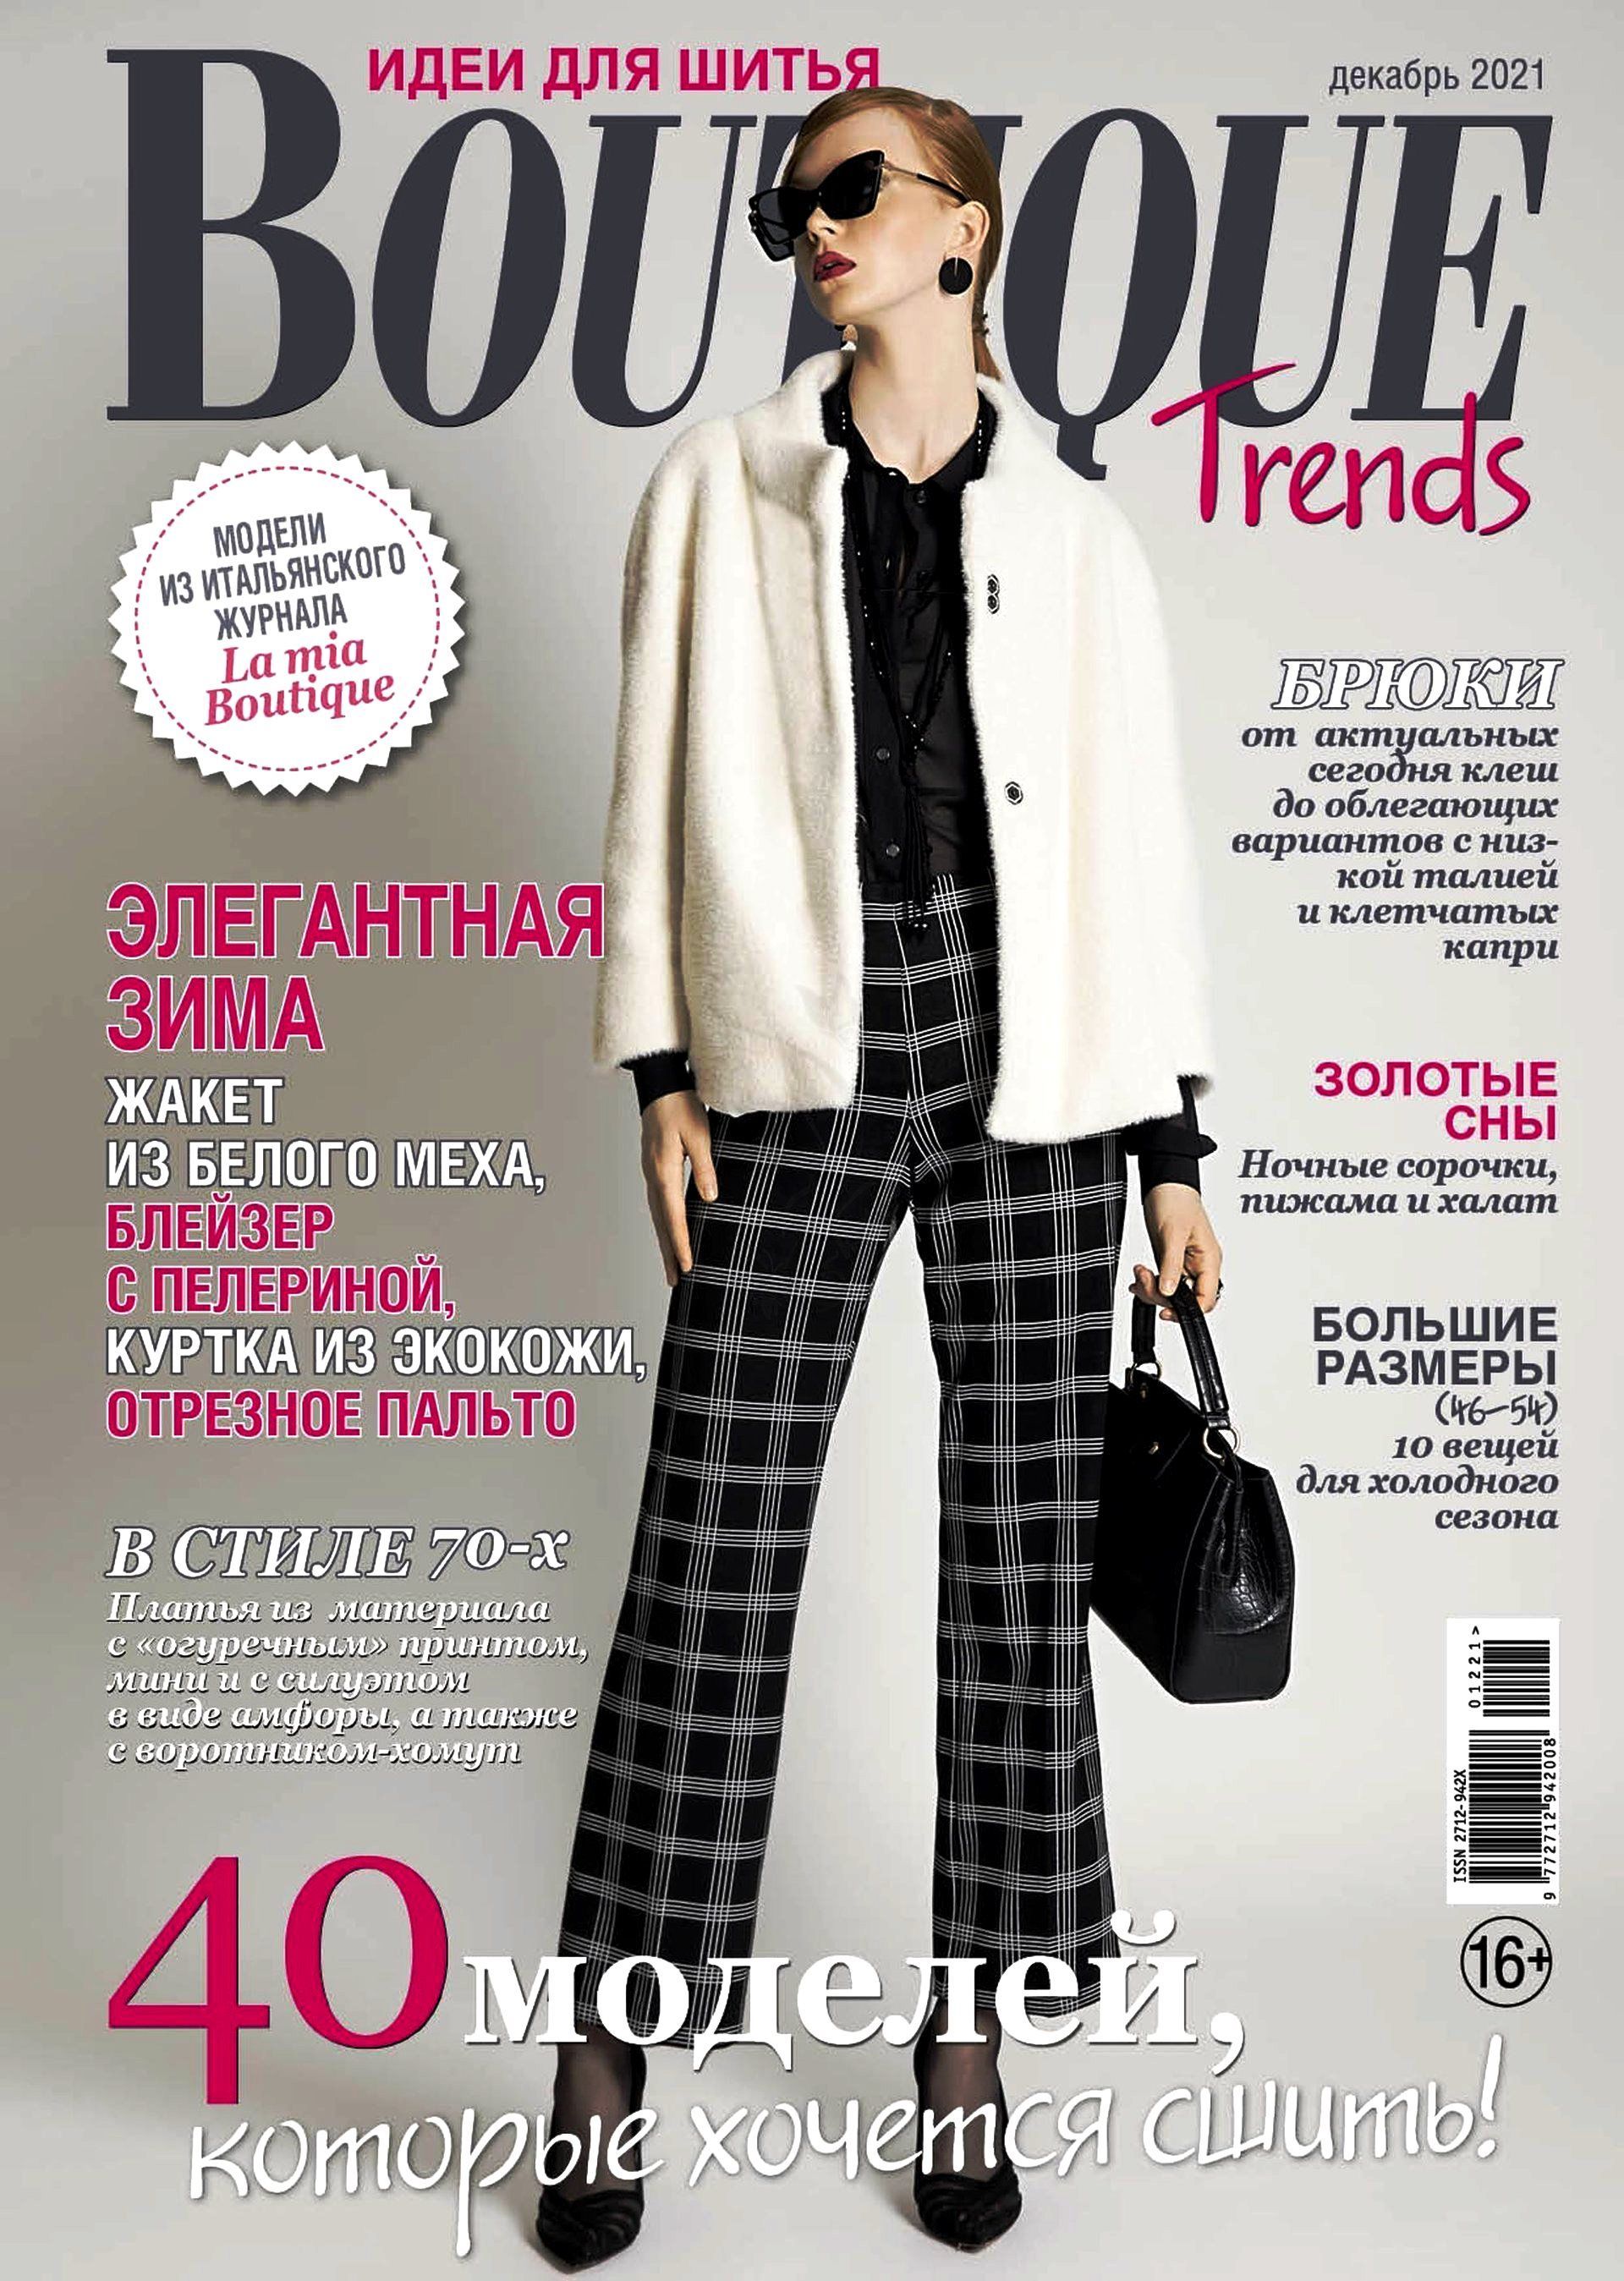 Trend boutique. Журнал Boutique trends. Журнал бутик. Boutique вязание журнал. Boutique trends 7/2021.